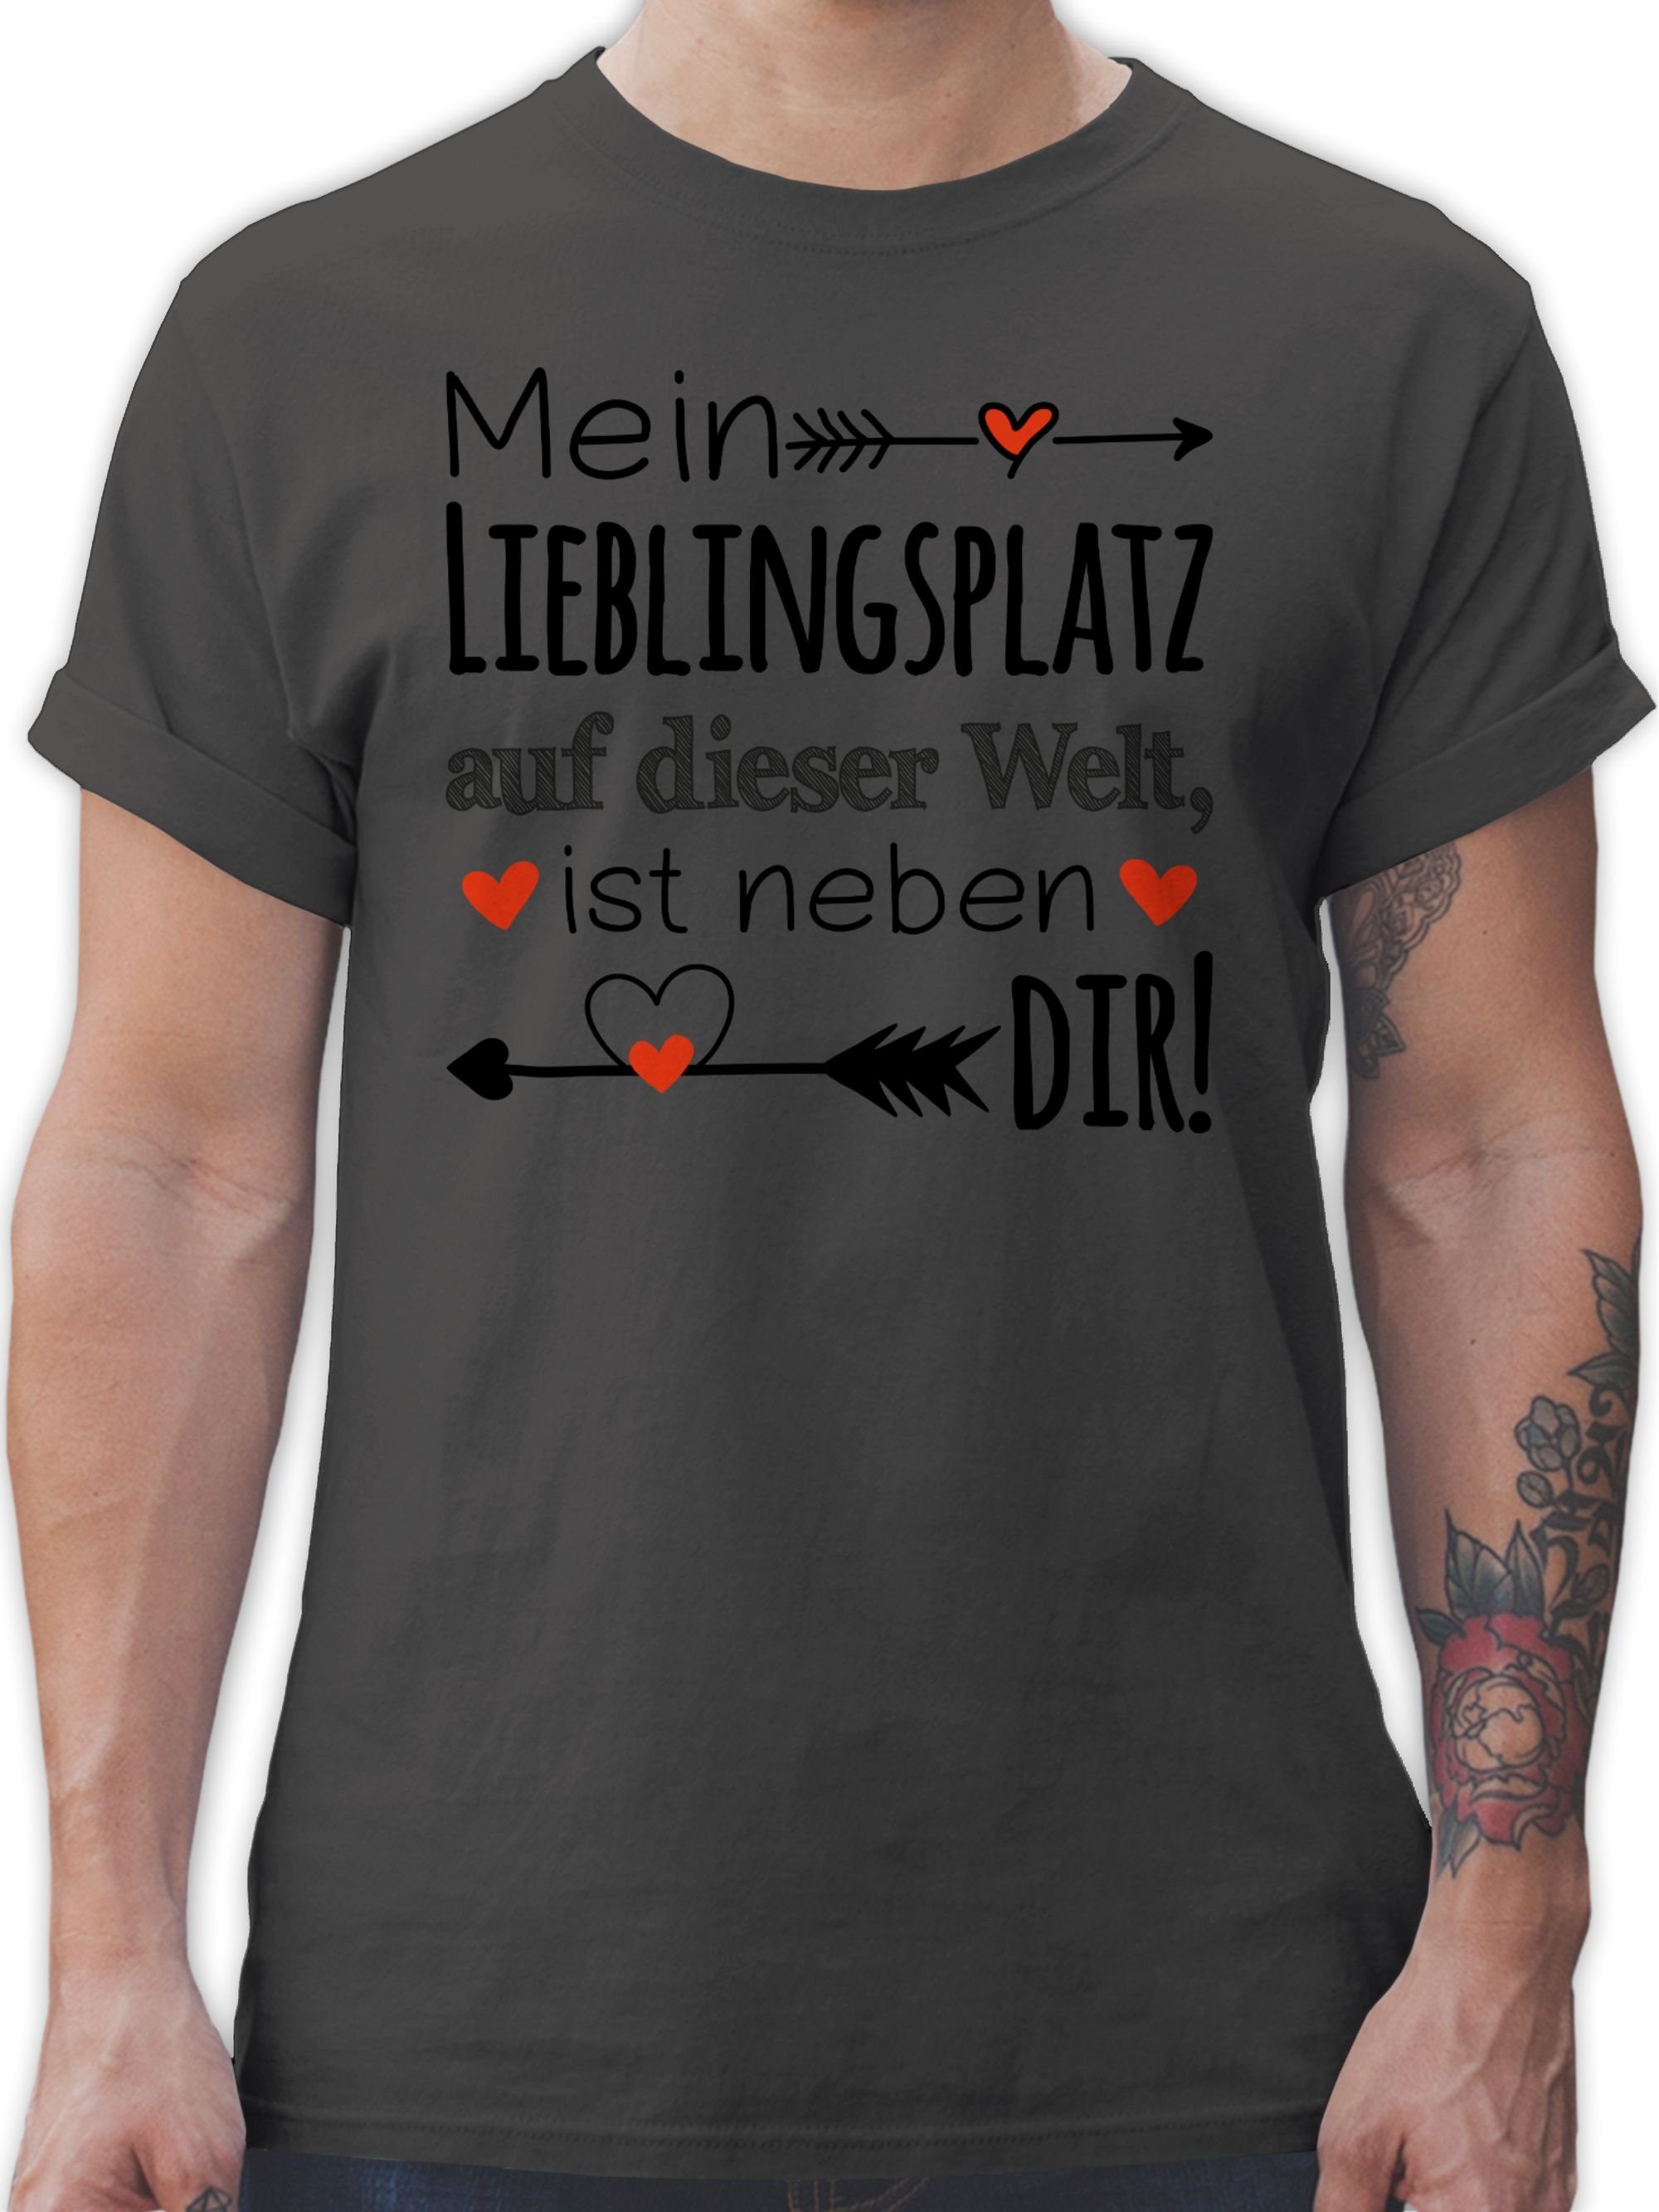 Liebe Valentinstag Beziehung Shirtracer T-Shirt Liebeserklärung 2 - Partner Partnerin Lieblingsplatz Geschenk Partner Dunkelgrau